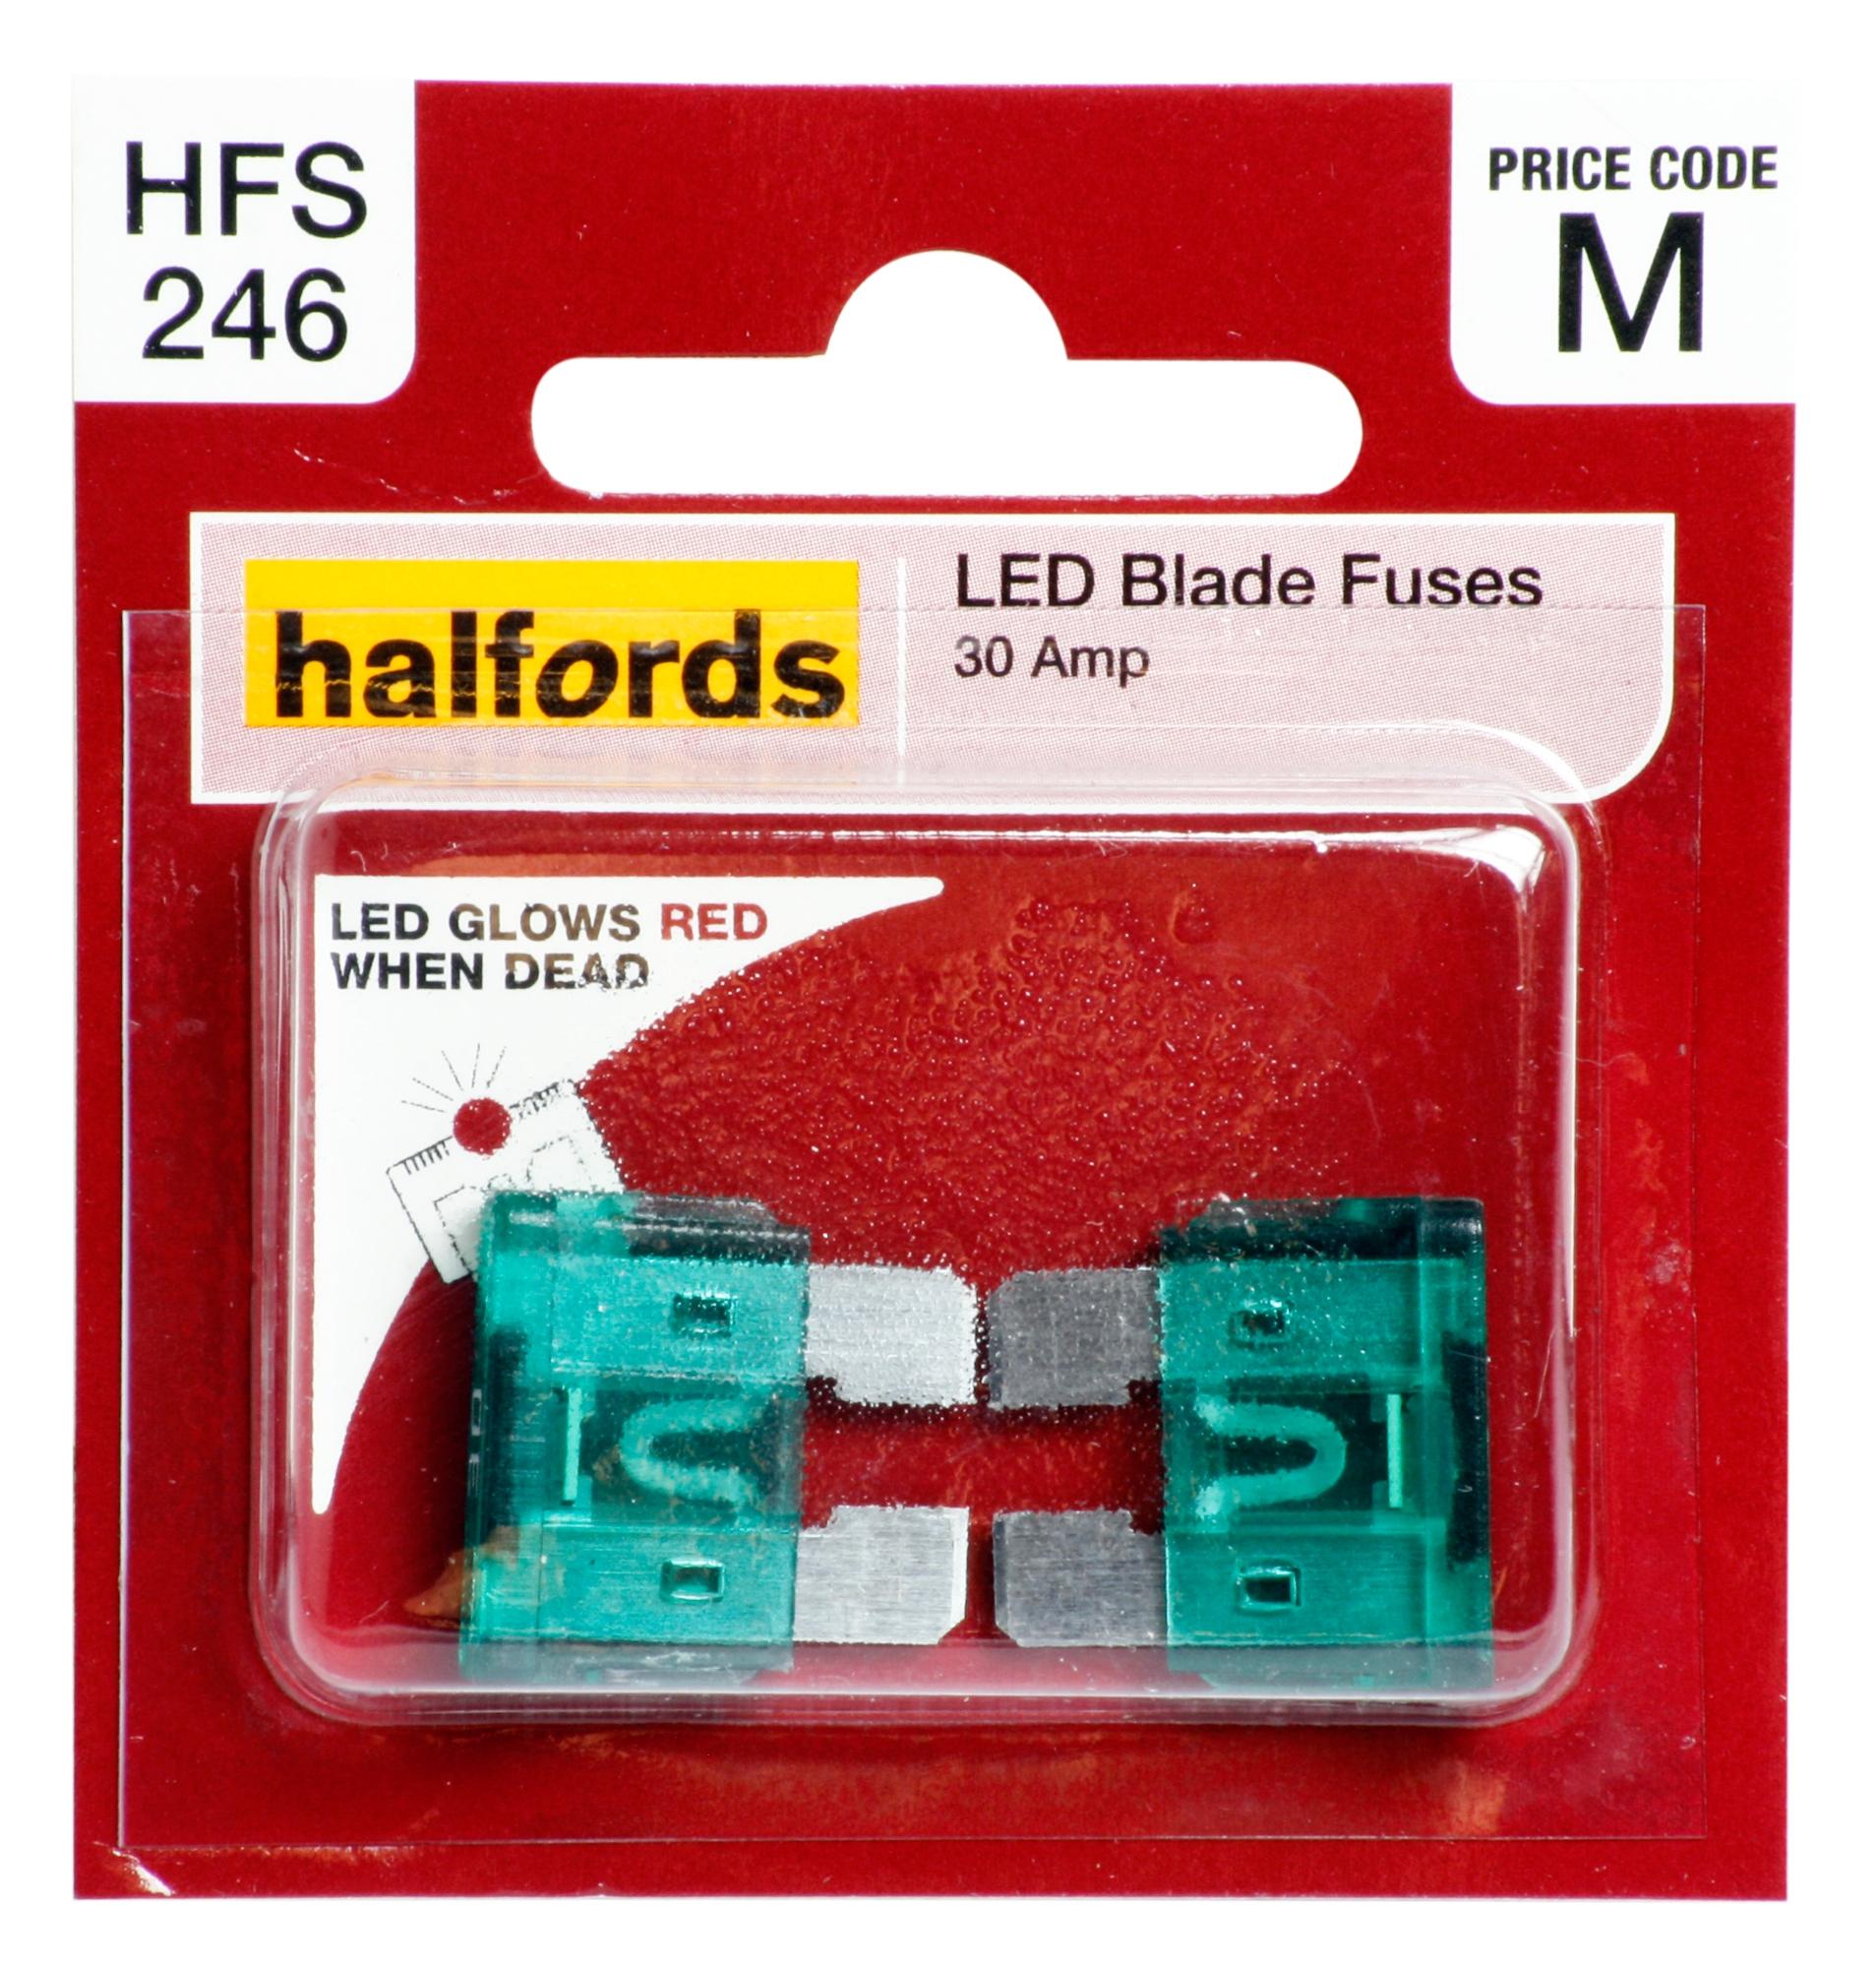 Halfords Led Blade Fuses 30 Amp (Hfs246)